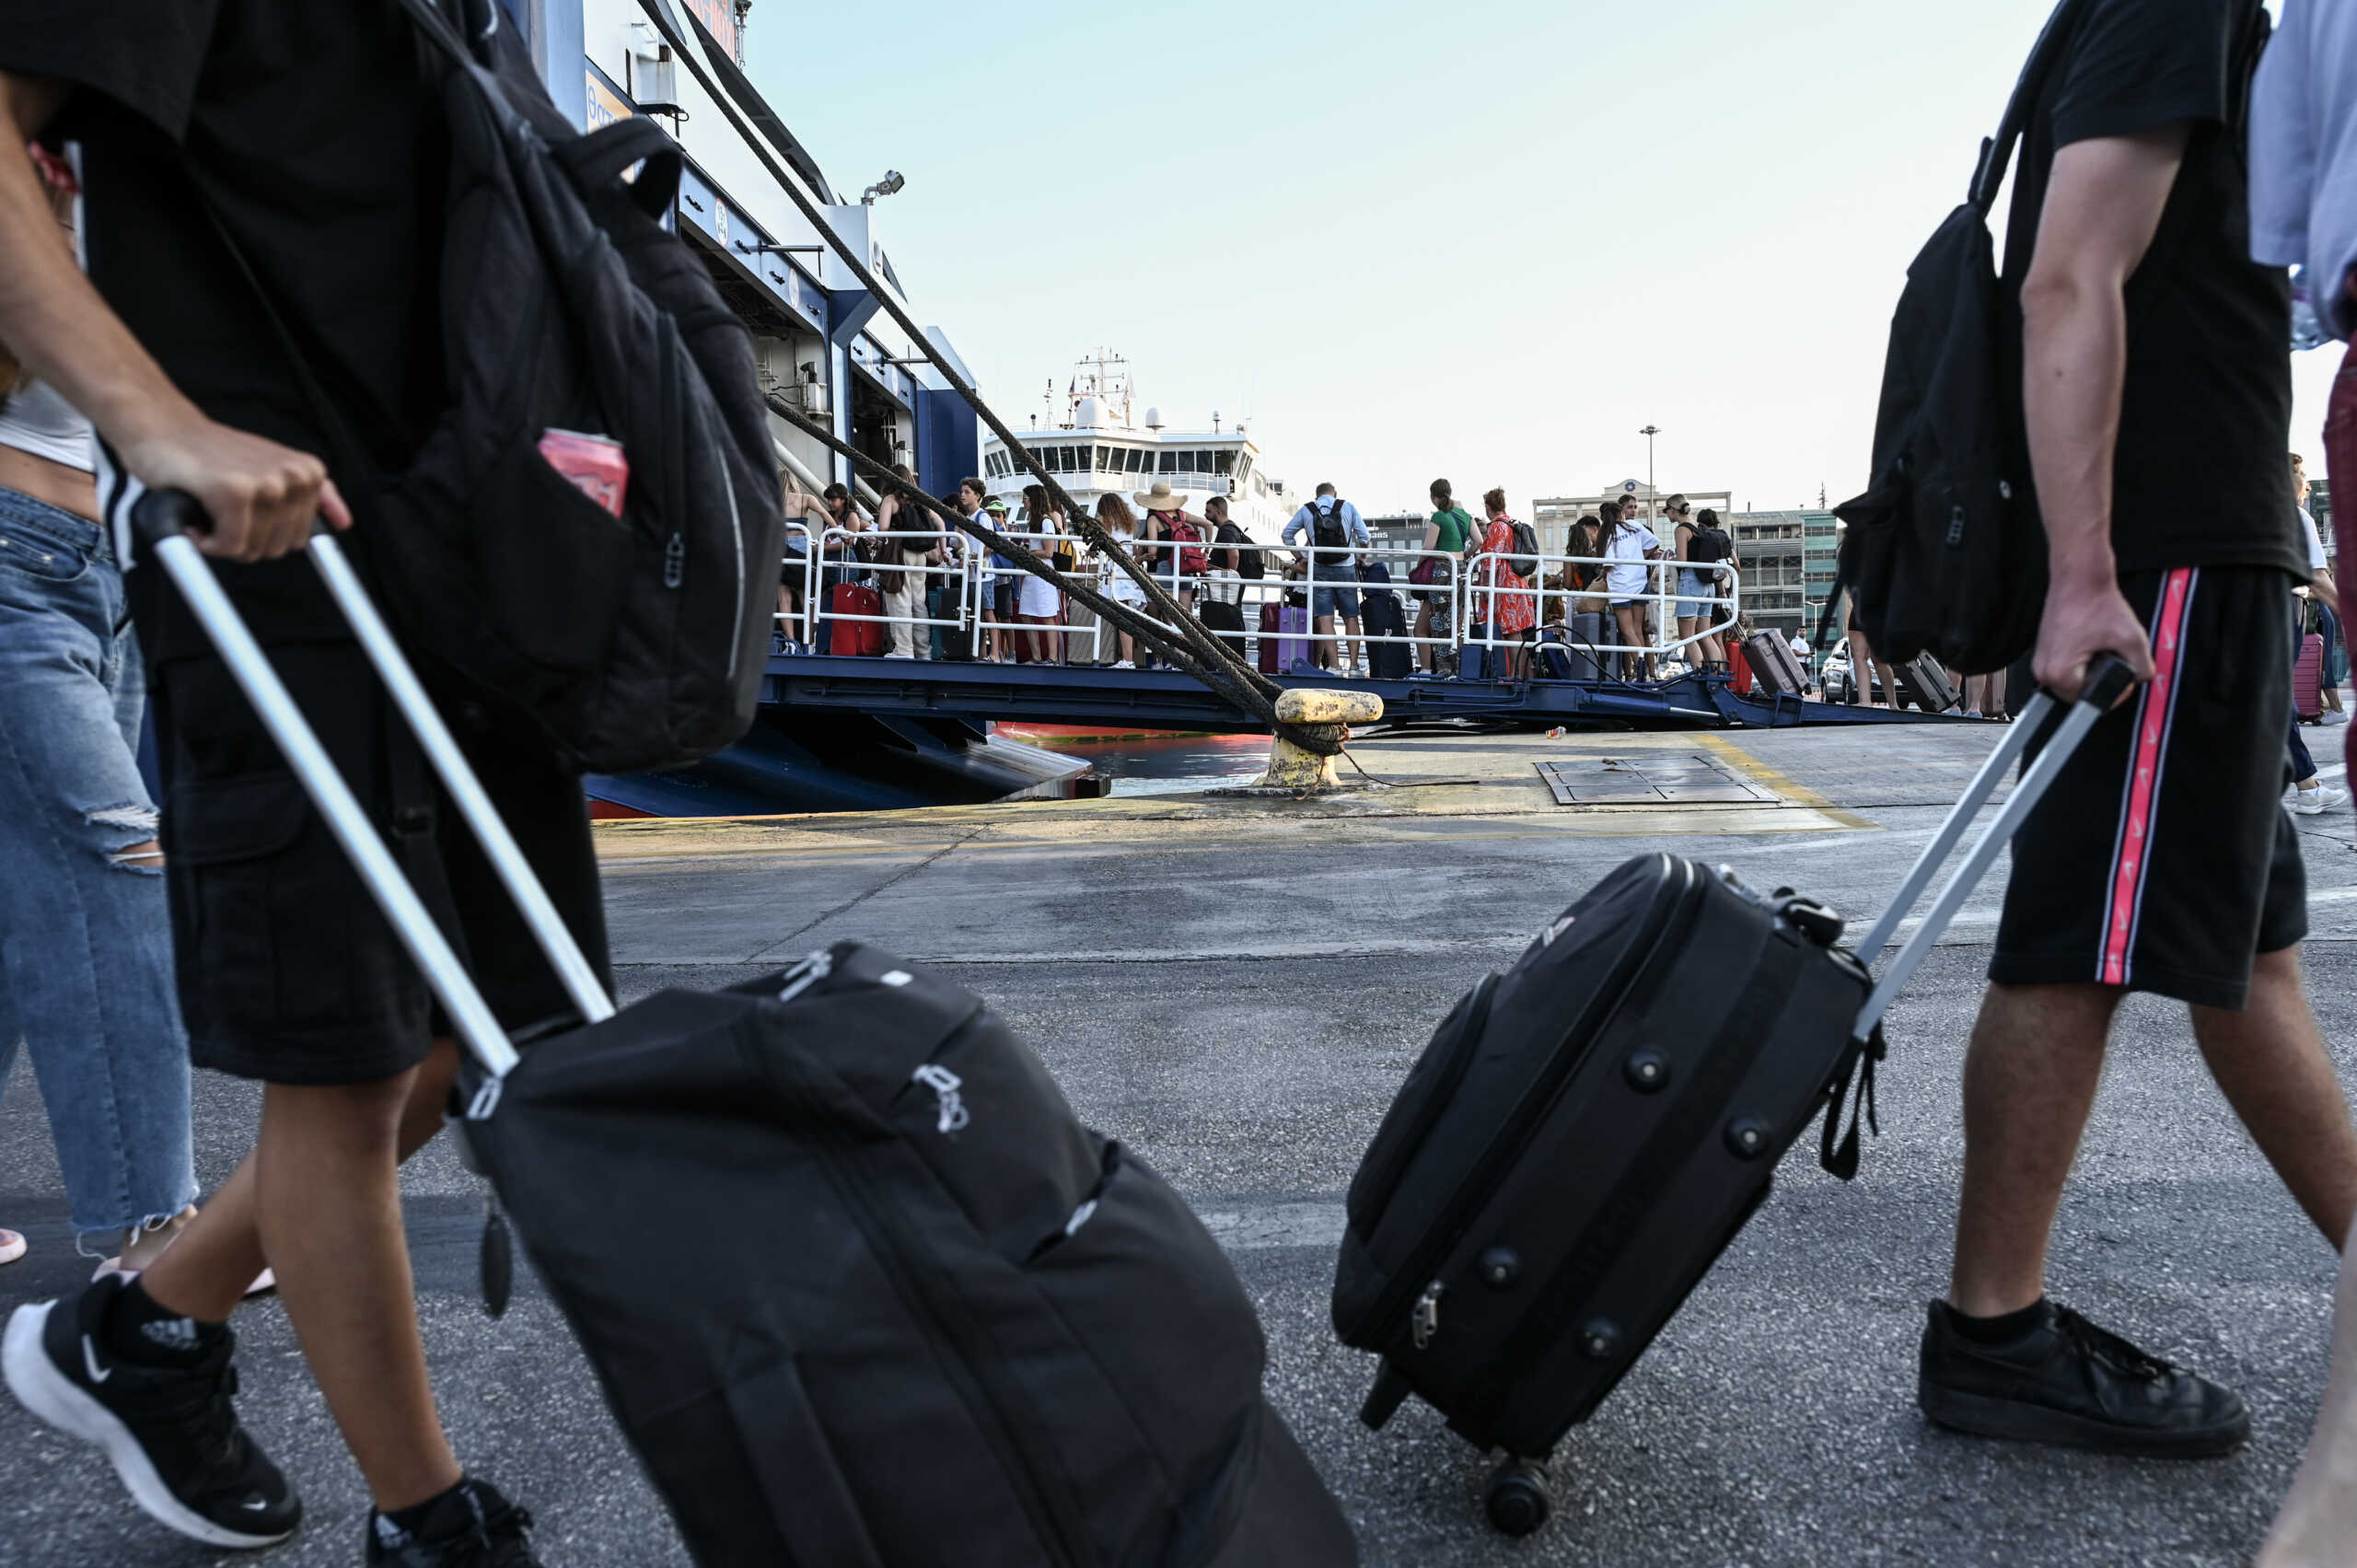 Ταλαιπωρία για πλοίο με 453 επιβάτες: Επιστρέφει στον Πειραιά λόγω μηχανικής βλάβης